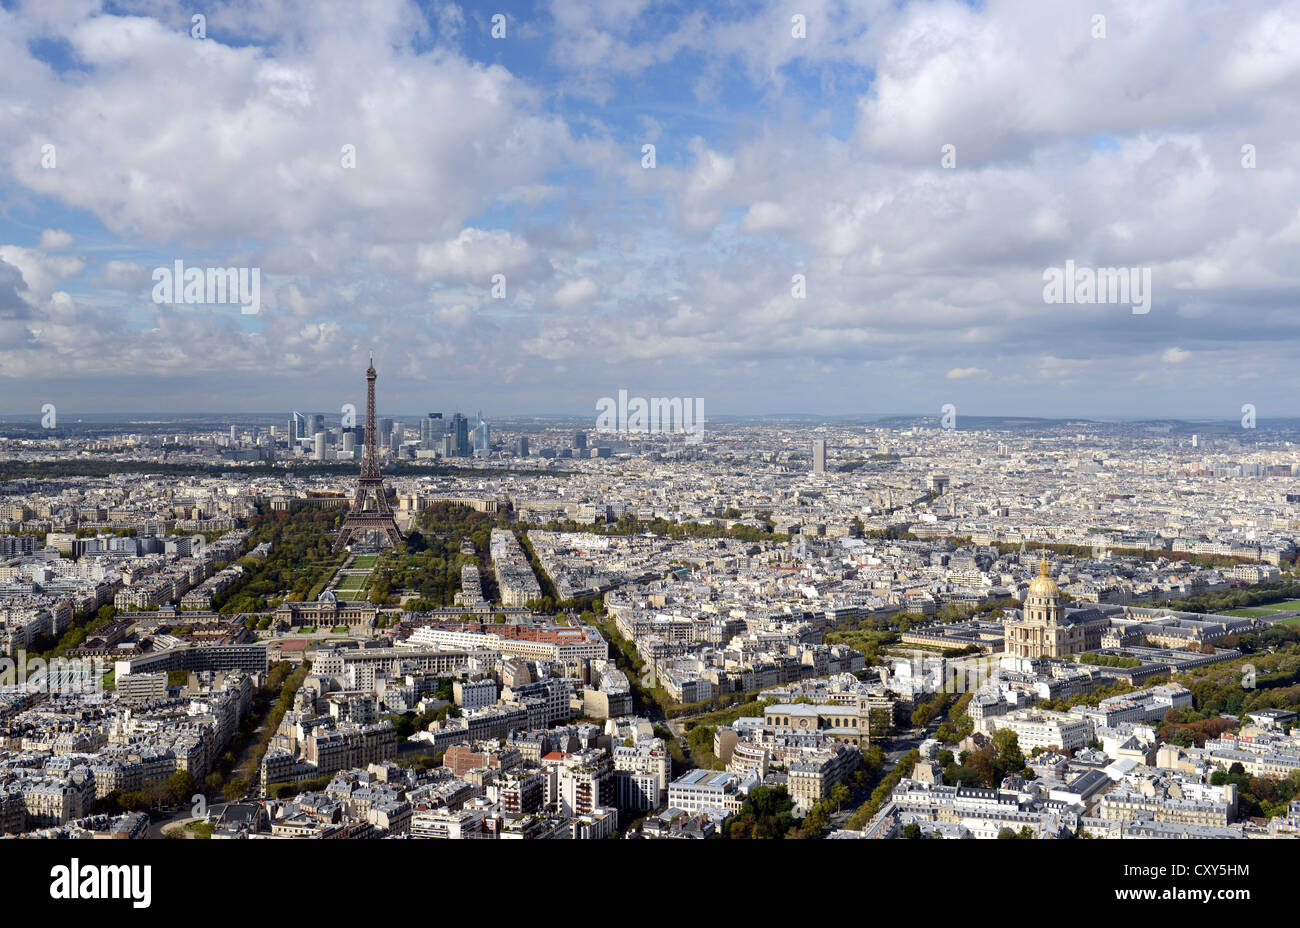 Paris and Eiffel Tower, Paris city, France Stock Photo